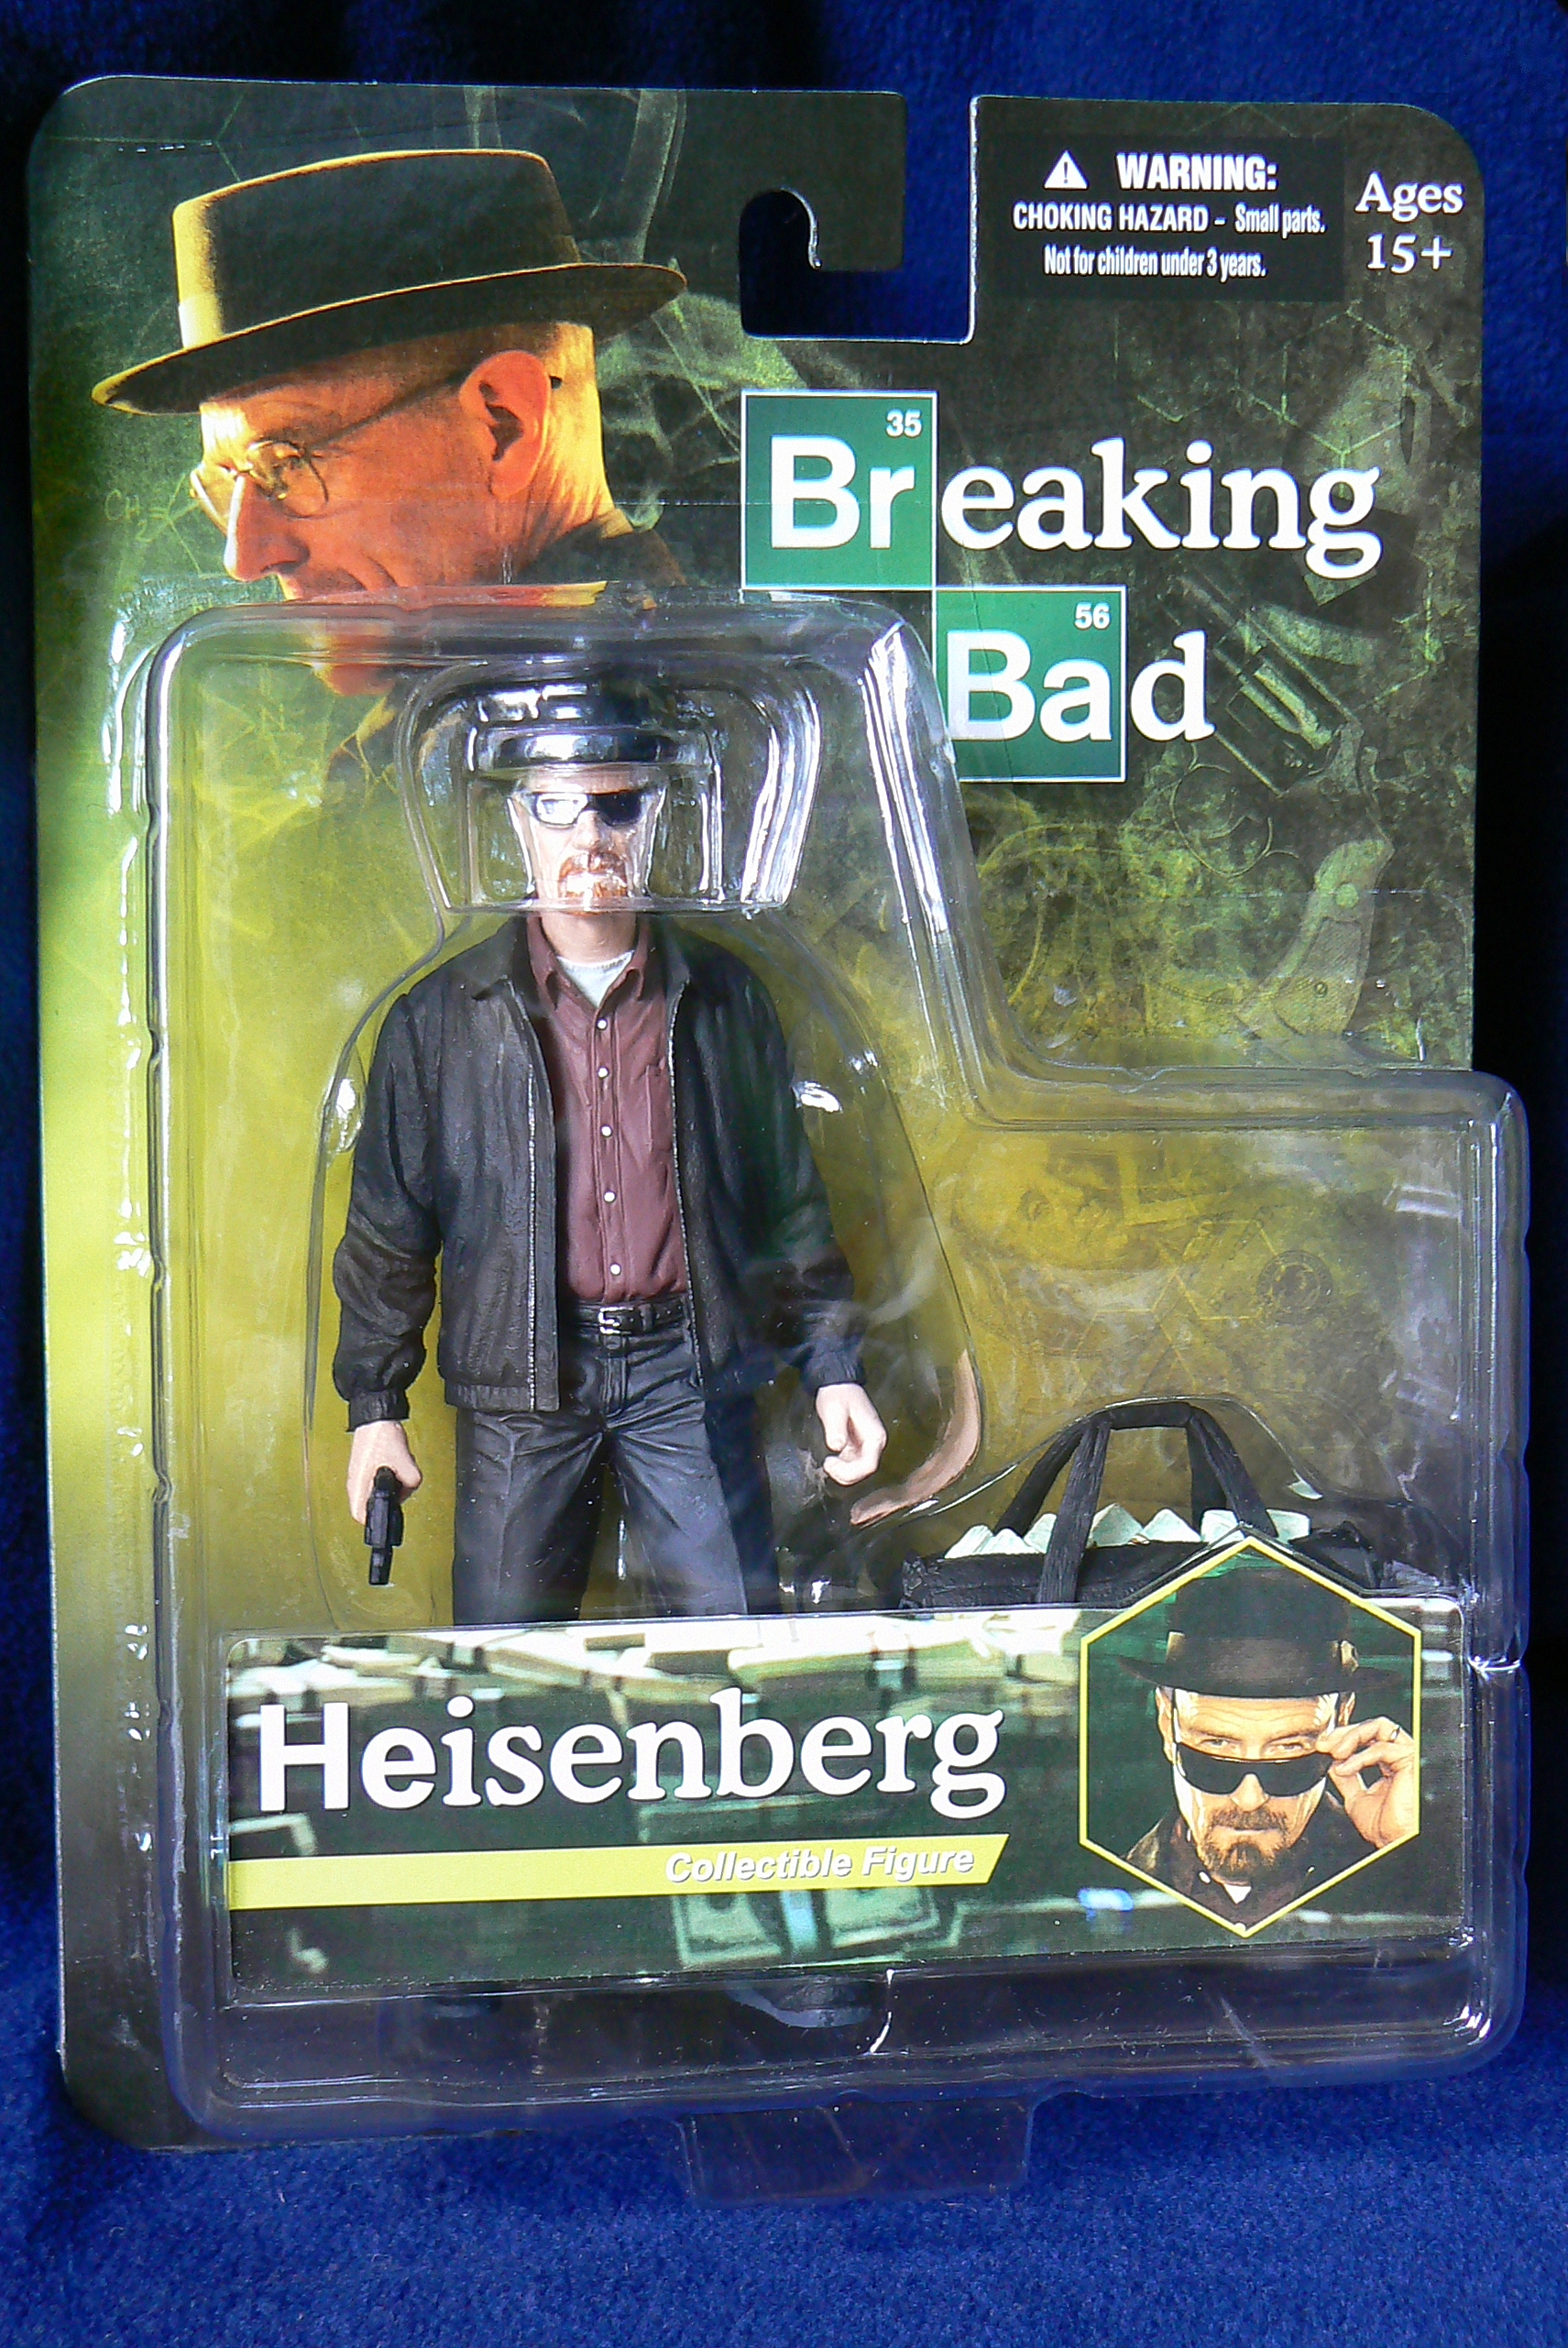 Mezco Walter White Heisenberg action figure